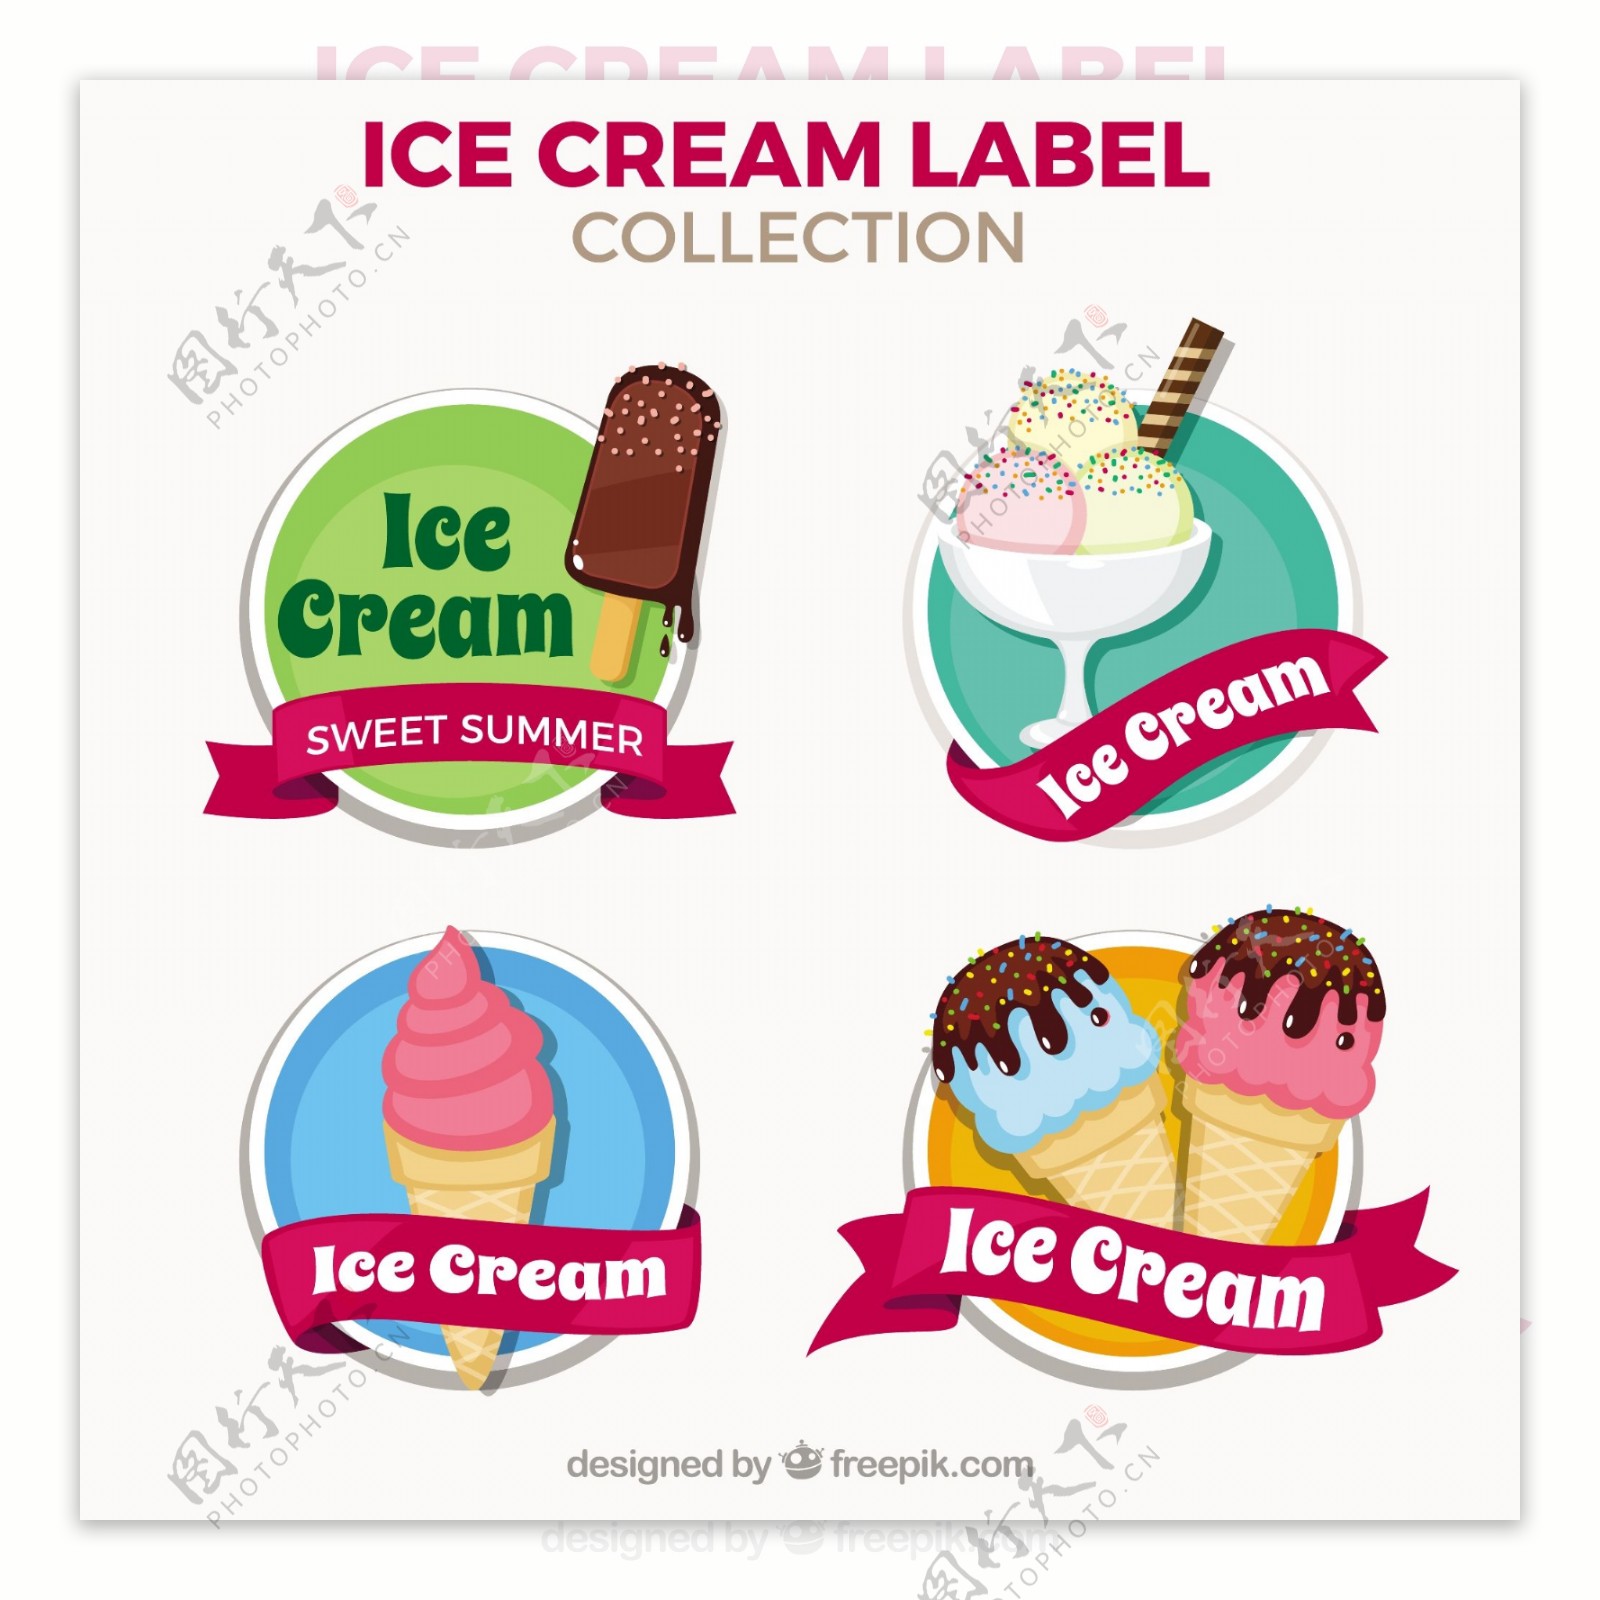 漂亮的手绘风格冰淇淋雪糕贴纸标签